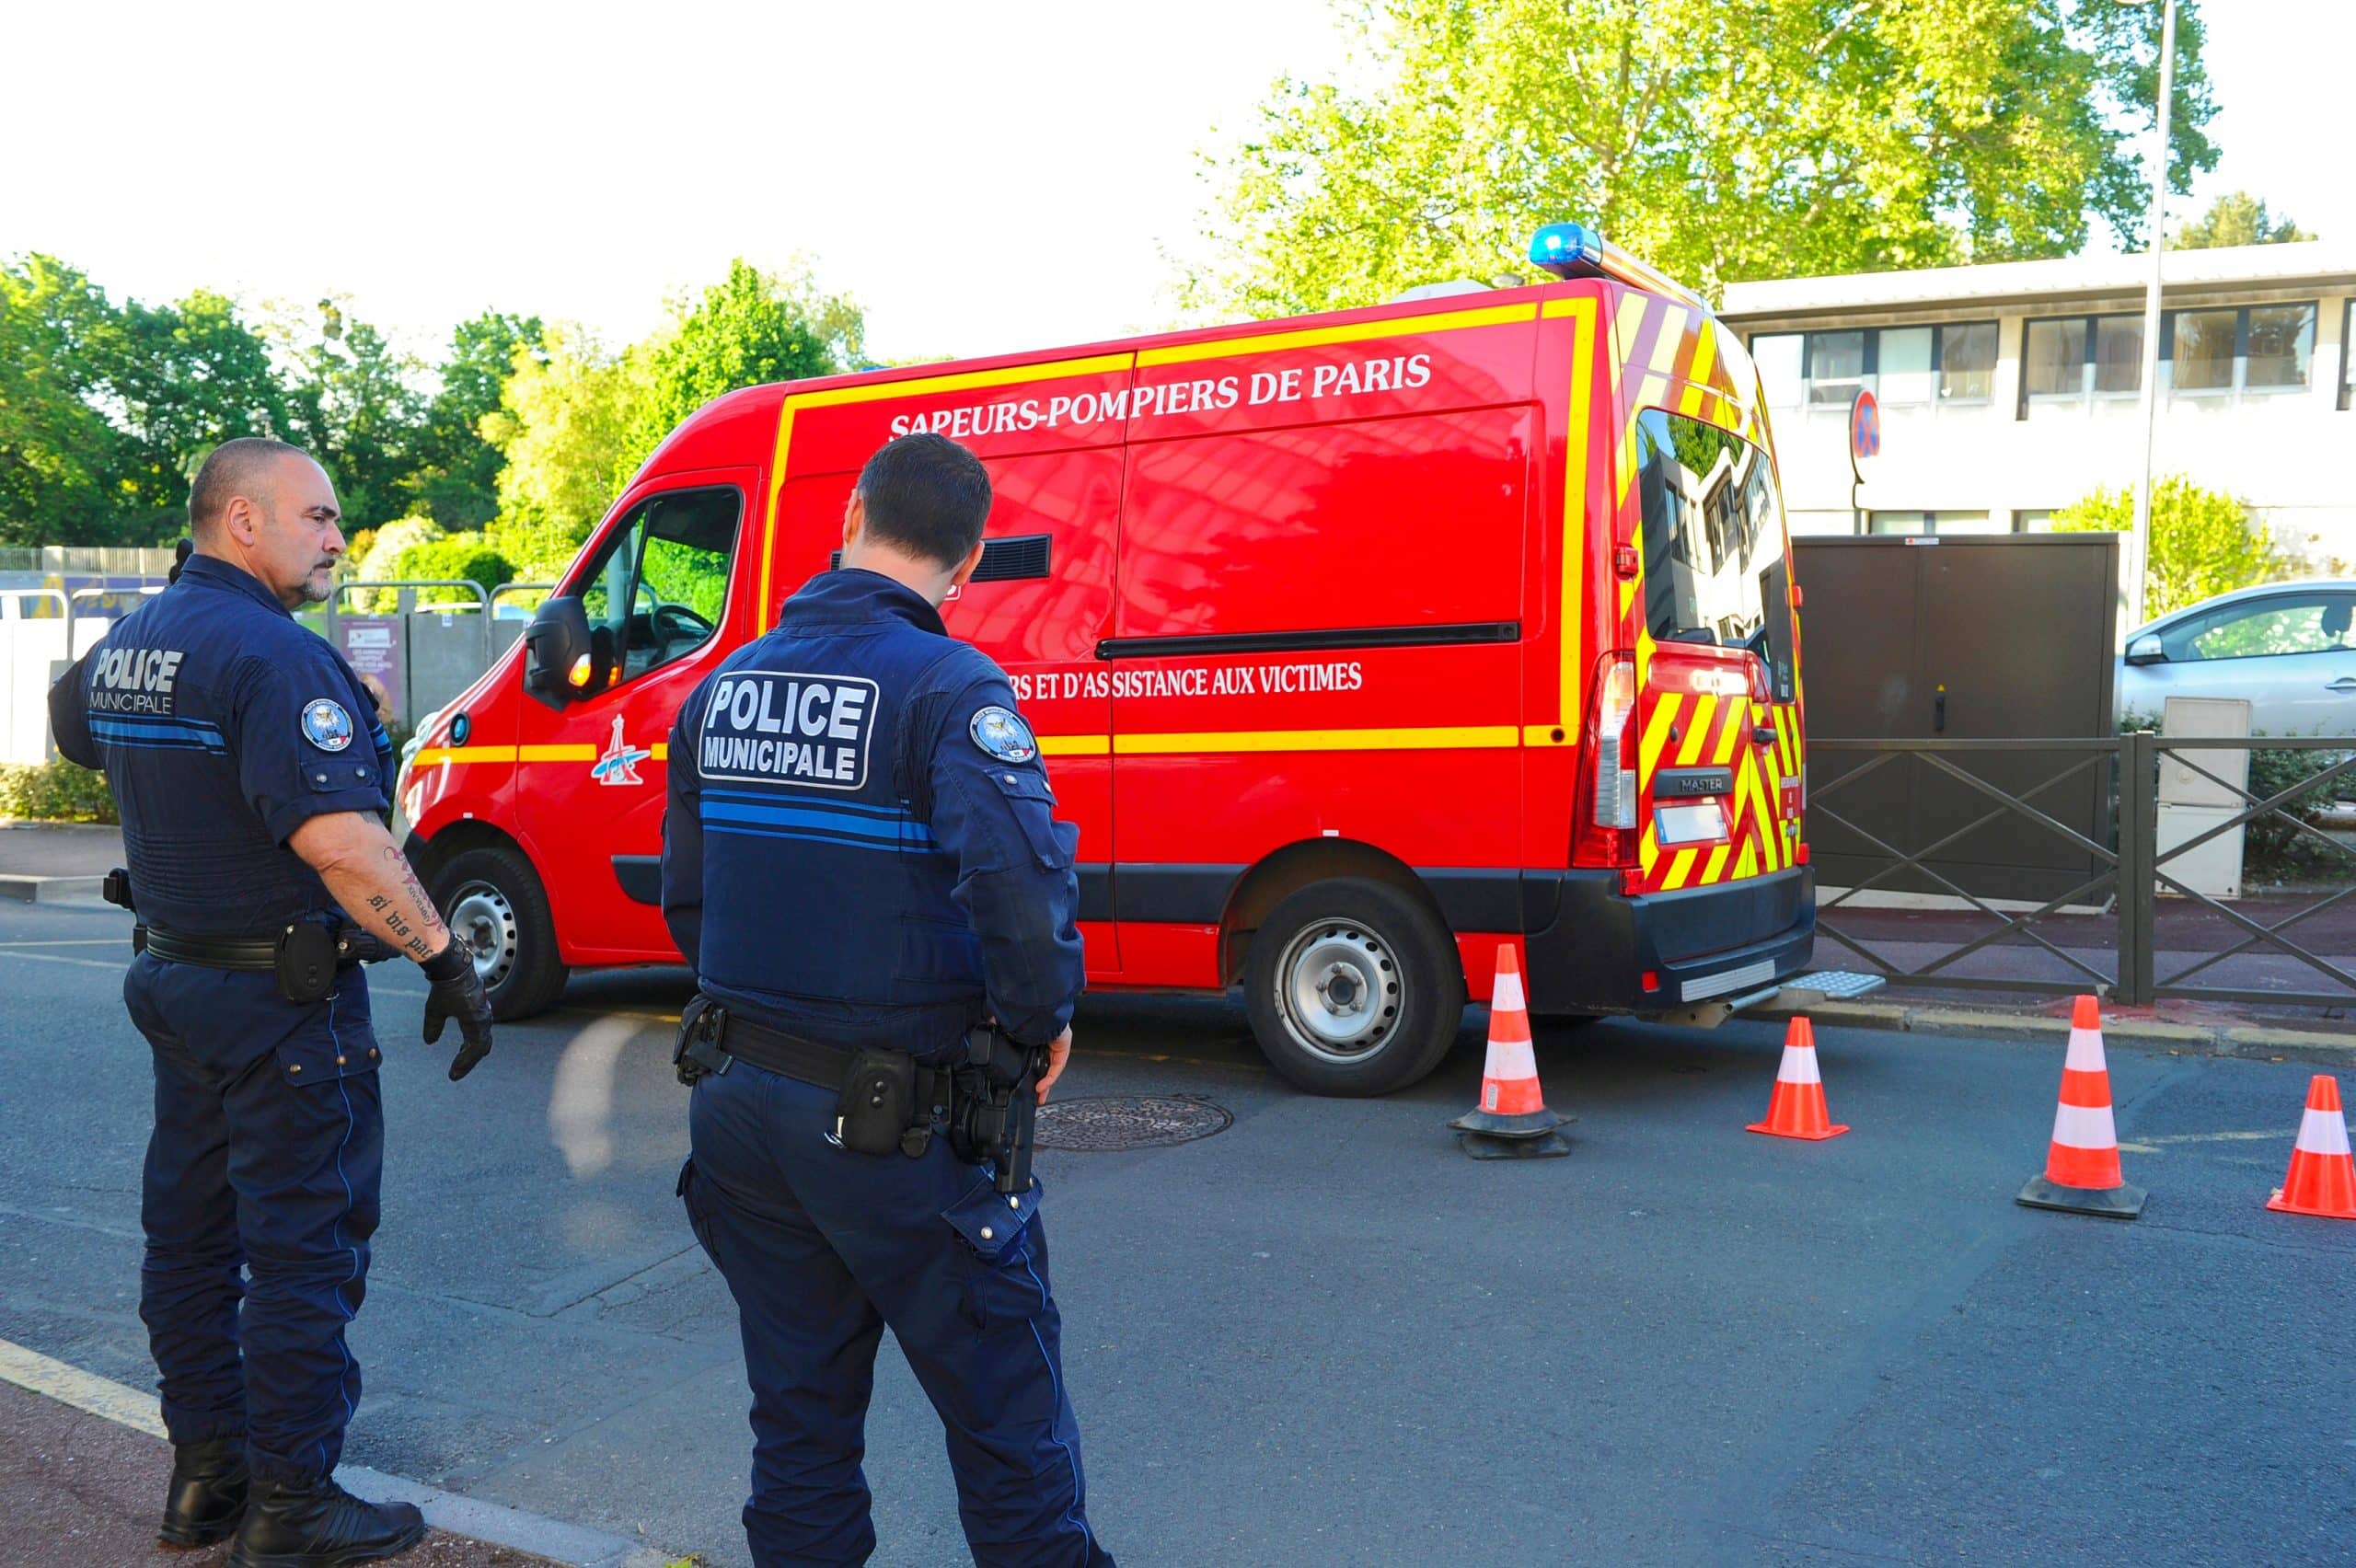 Policiers municipaux veillant à la sécurité routière, lors de l'intervention des sapeurs-pompiers de paris